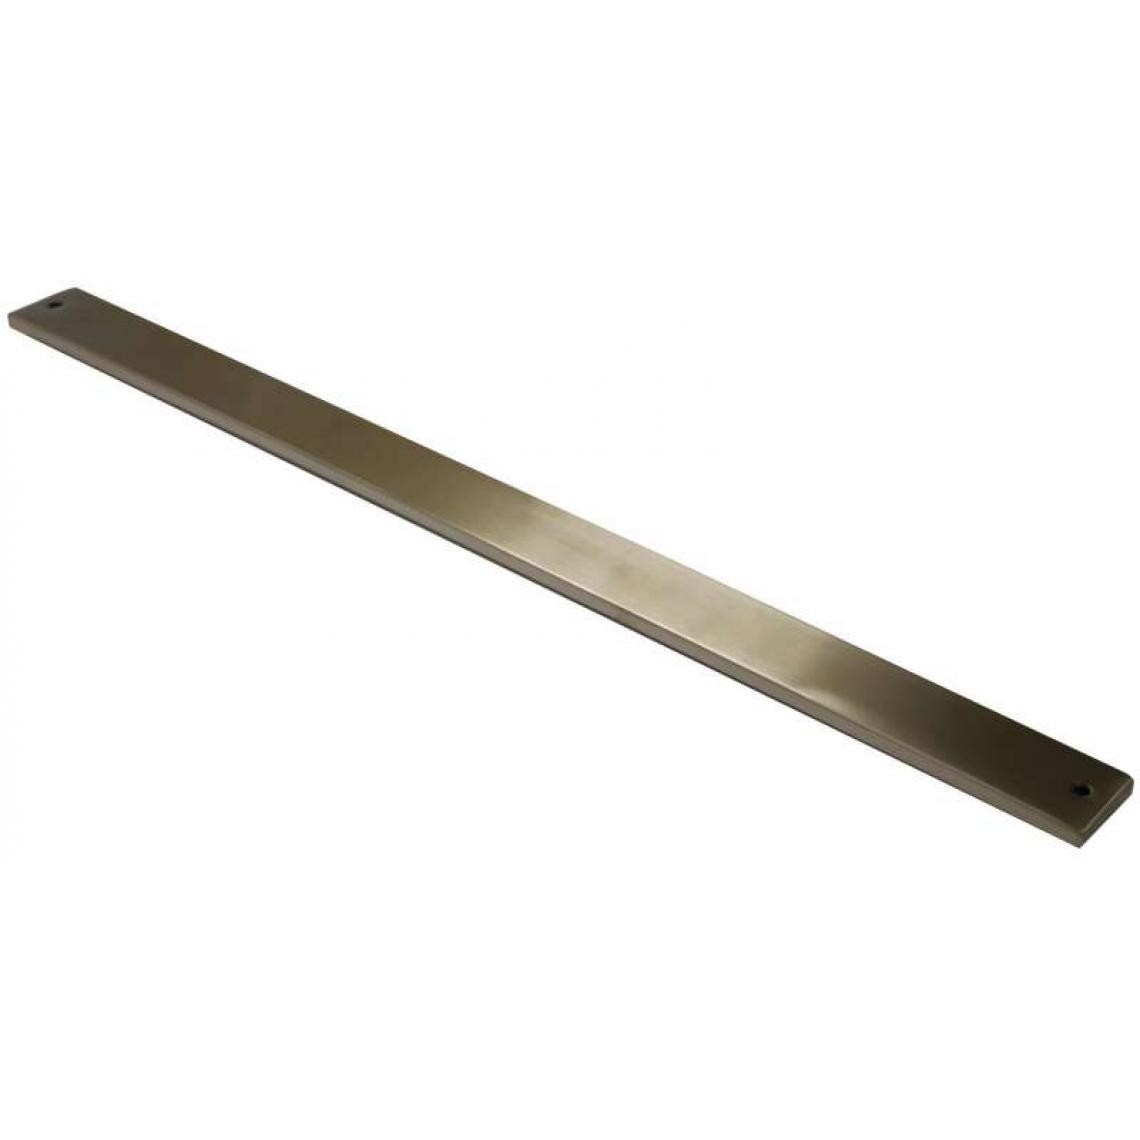 Arelec - Barre aimantée porte couteaux - Epaisseur : 15 mm - Hauteur : 35 mm - Poids : 400 g - Finition : Brossé - Matériau : Acier inoxydable - Longueur : 500 mm - ARELEC - Fond de hotte